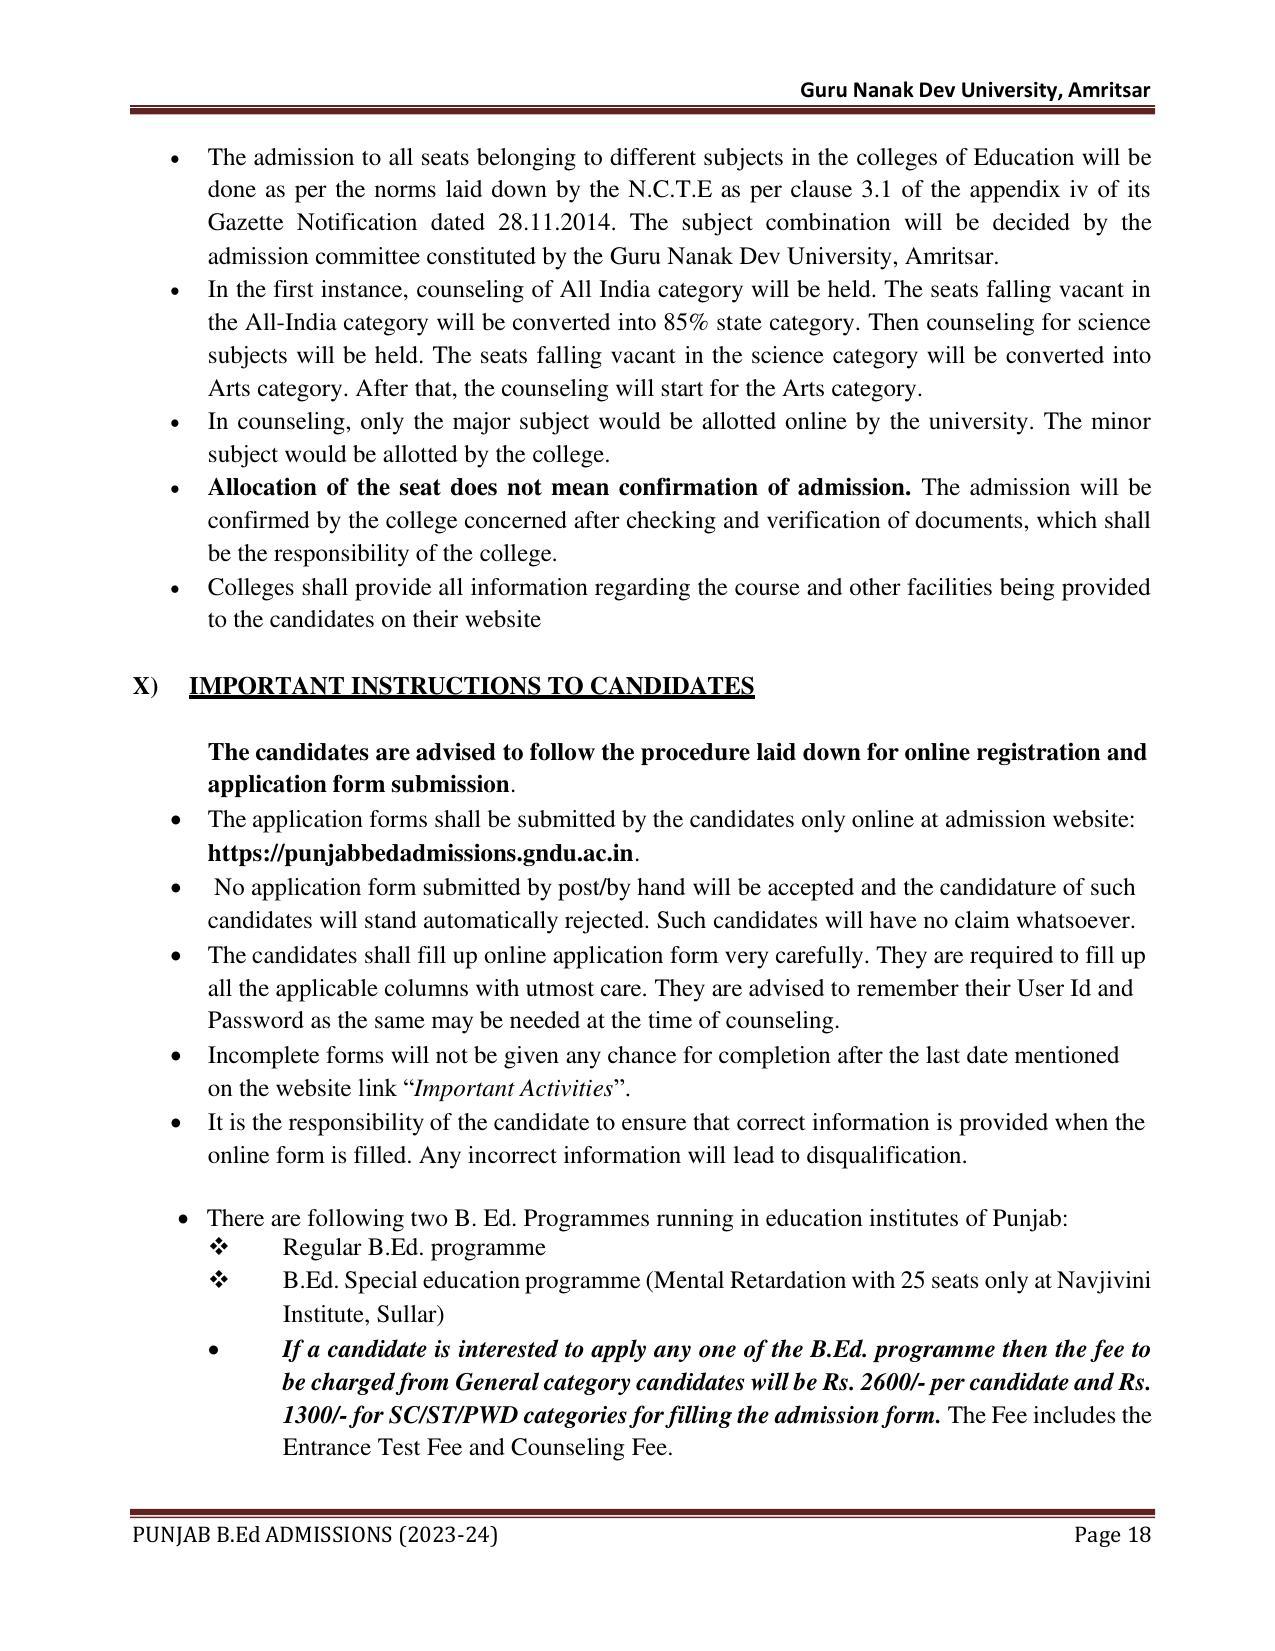 Punjab B.Ed CET 2023 - Page 18